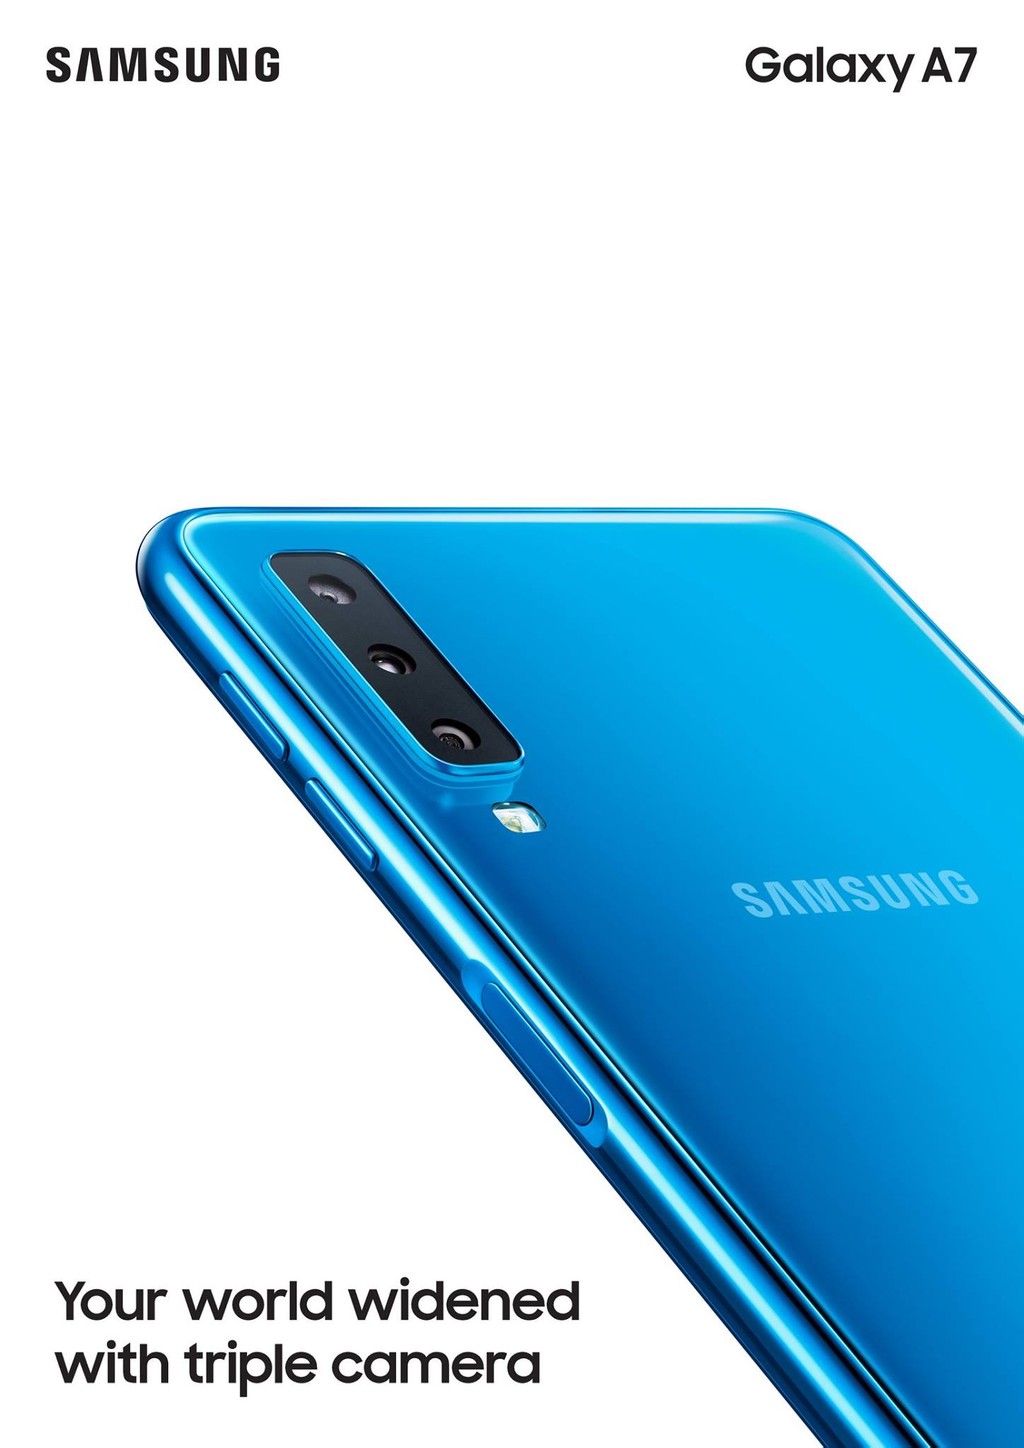 Samsung Galaxy A7 (2018) chính thức: cảm biến vân tay cạnh phải, 3 camera sau ảnh 2